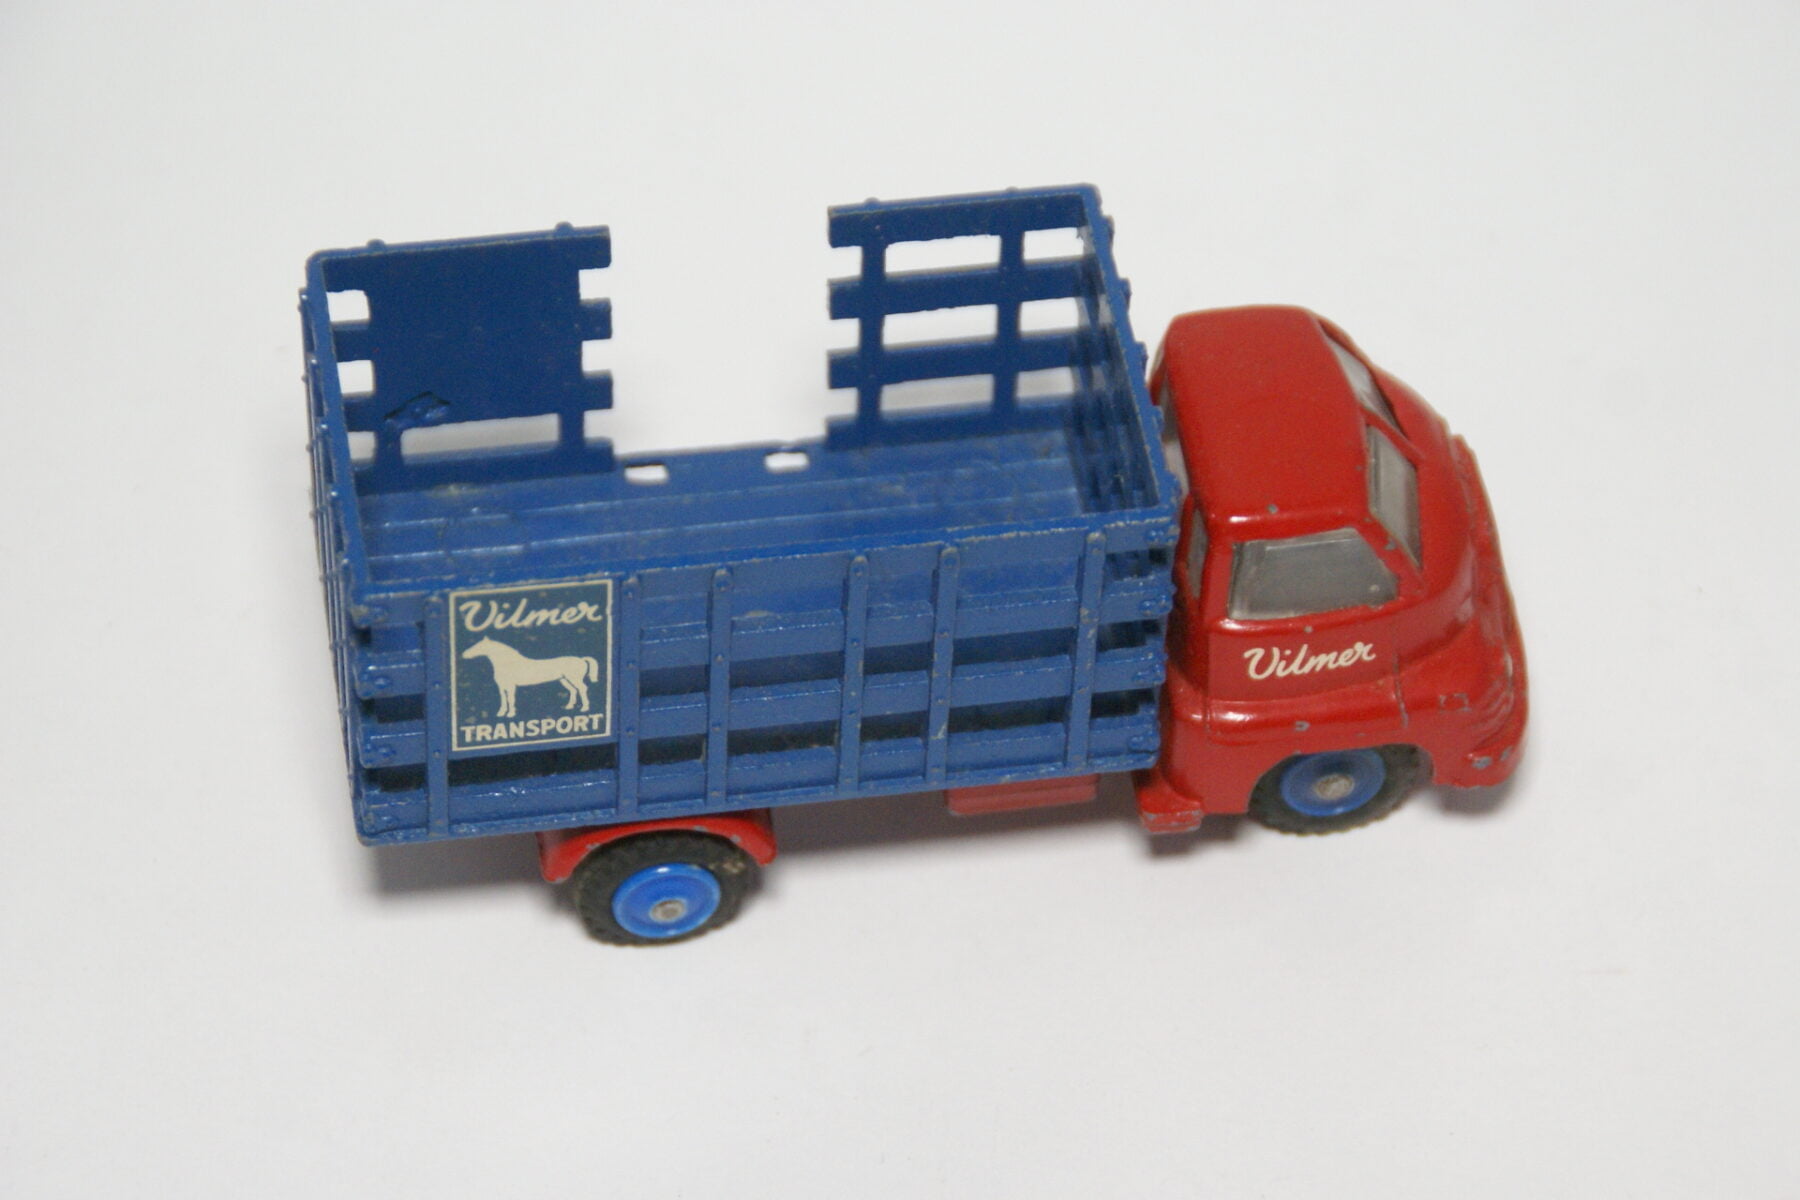 DSC01189 miniatuur Bedford veewagen rood blauw 1op43 Vilmer DK